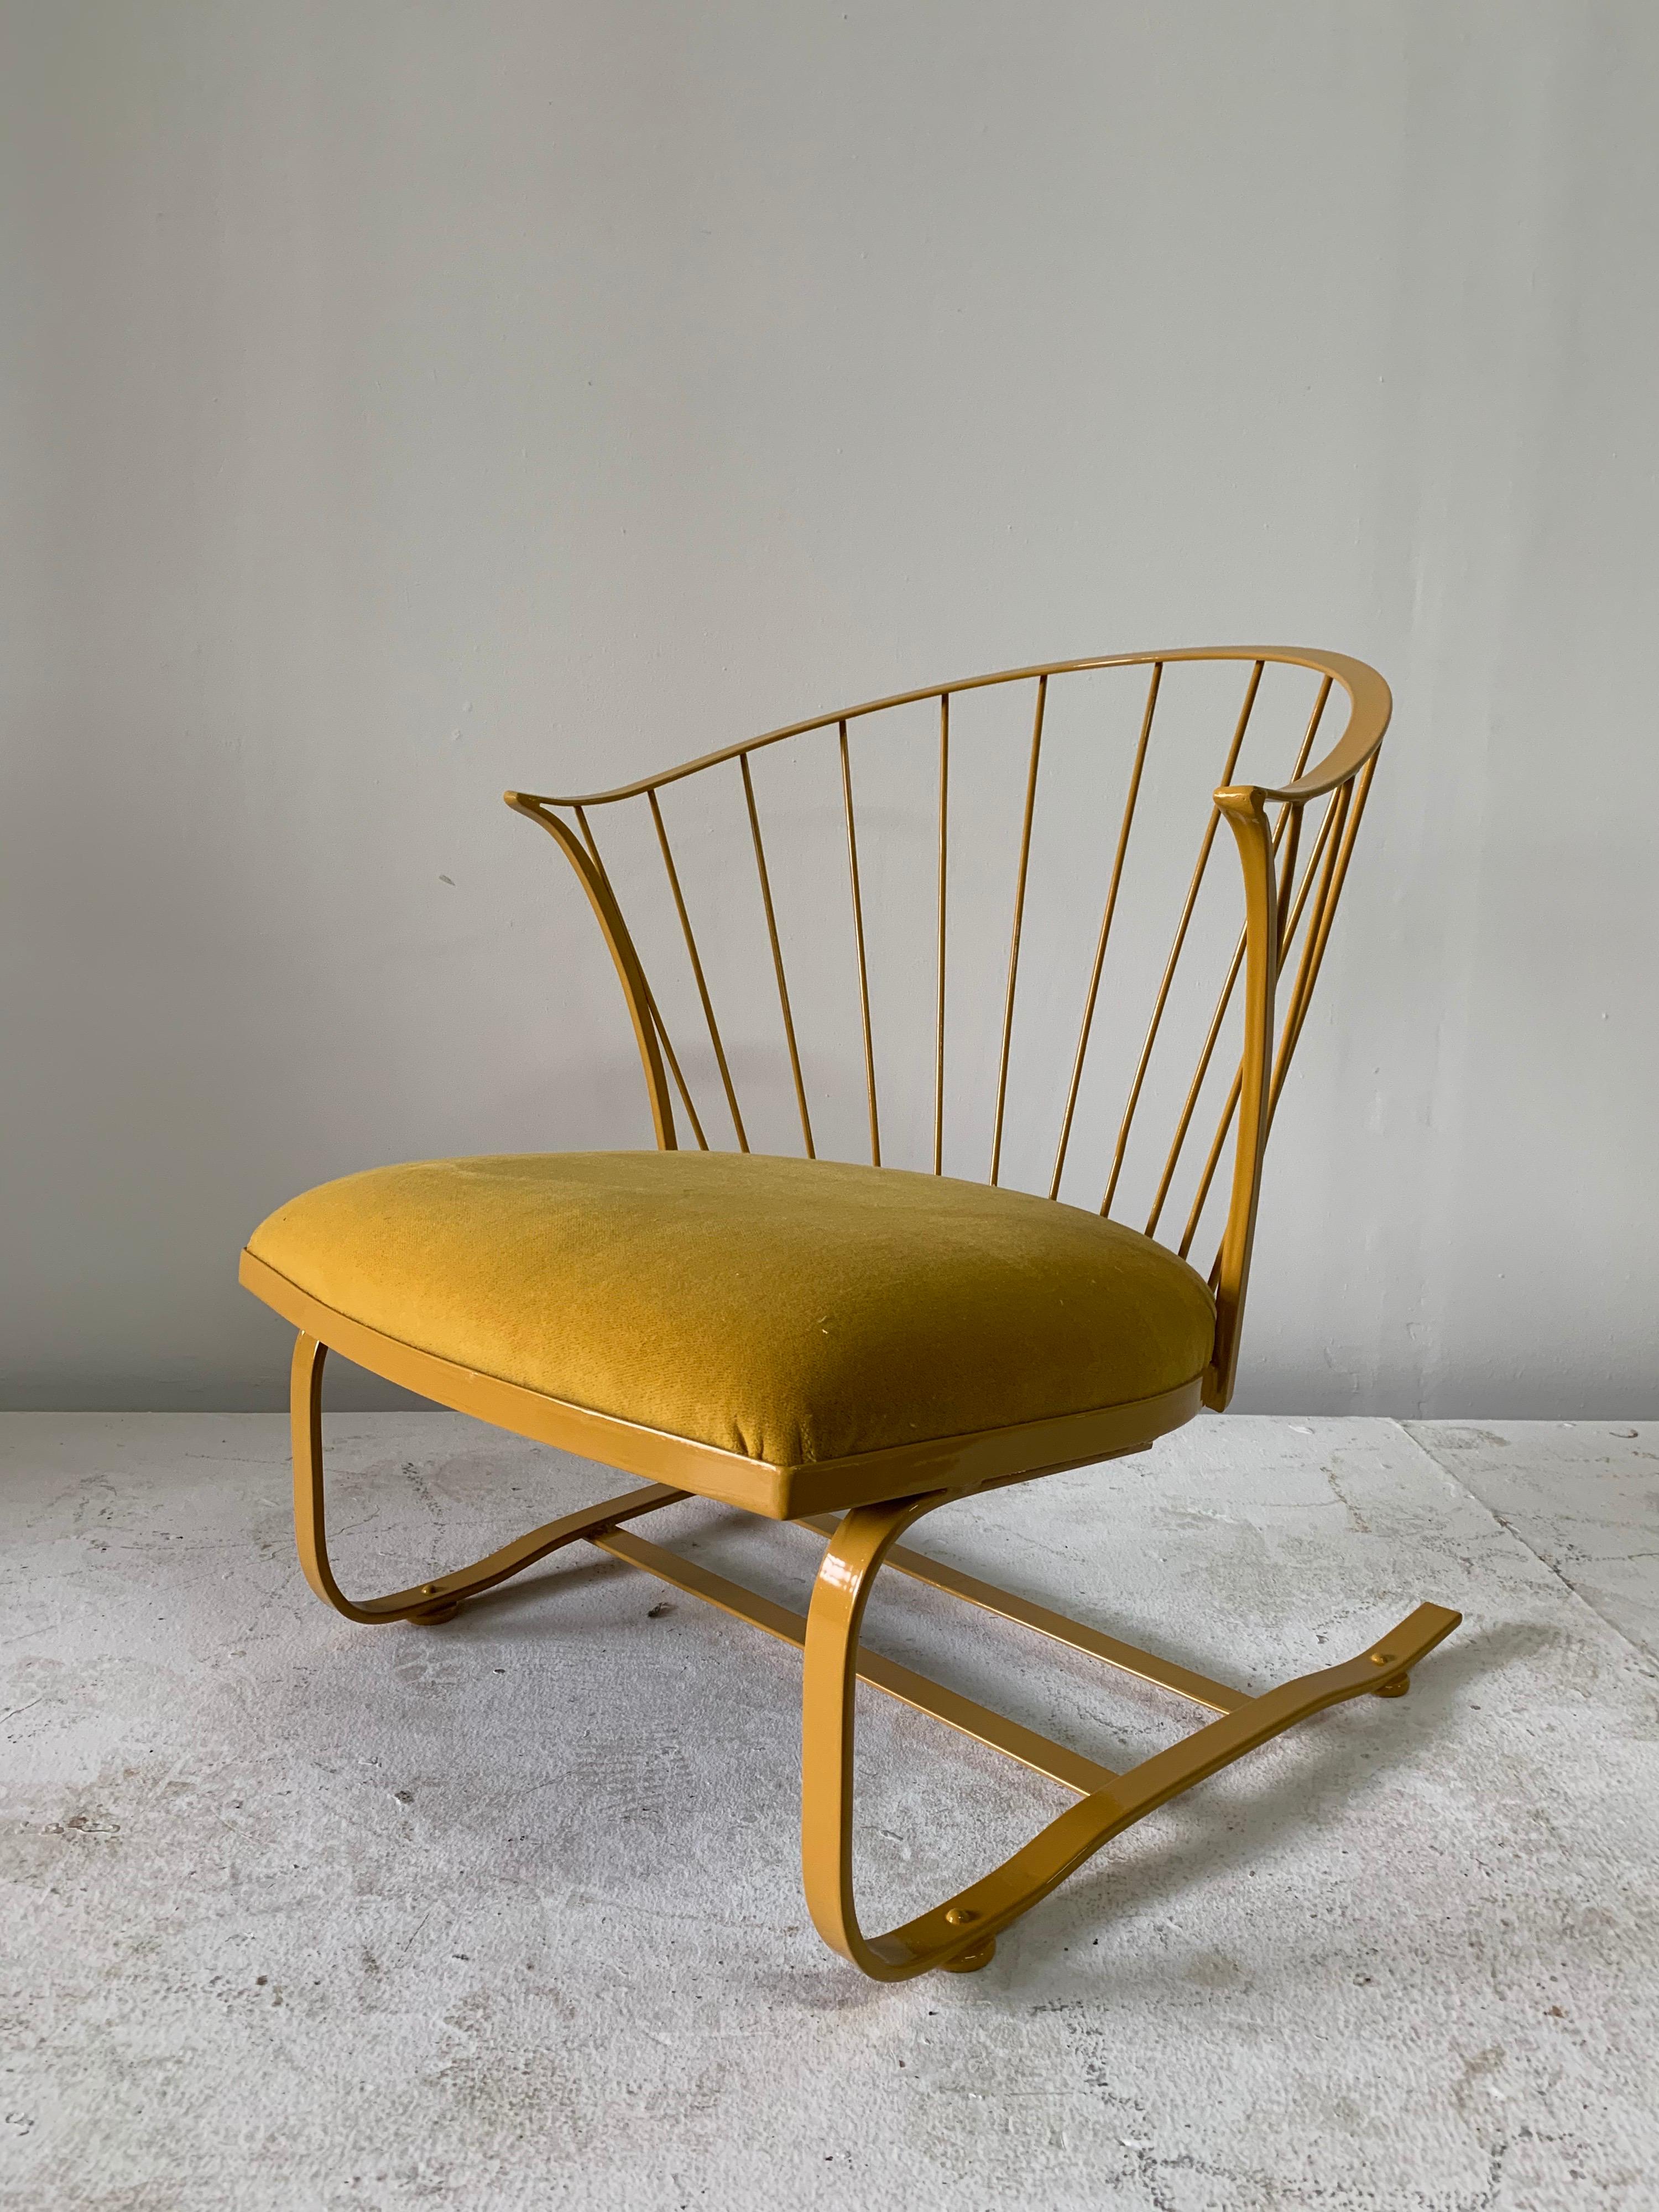 Rare fauteuil vintage Russell Woodard à revêtement en poudre personnalisé qui se penche en arrière dans le style rocker. Cette chaise Woodard en fer nouvellement revêtue de poudre en 